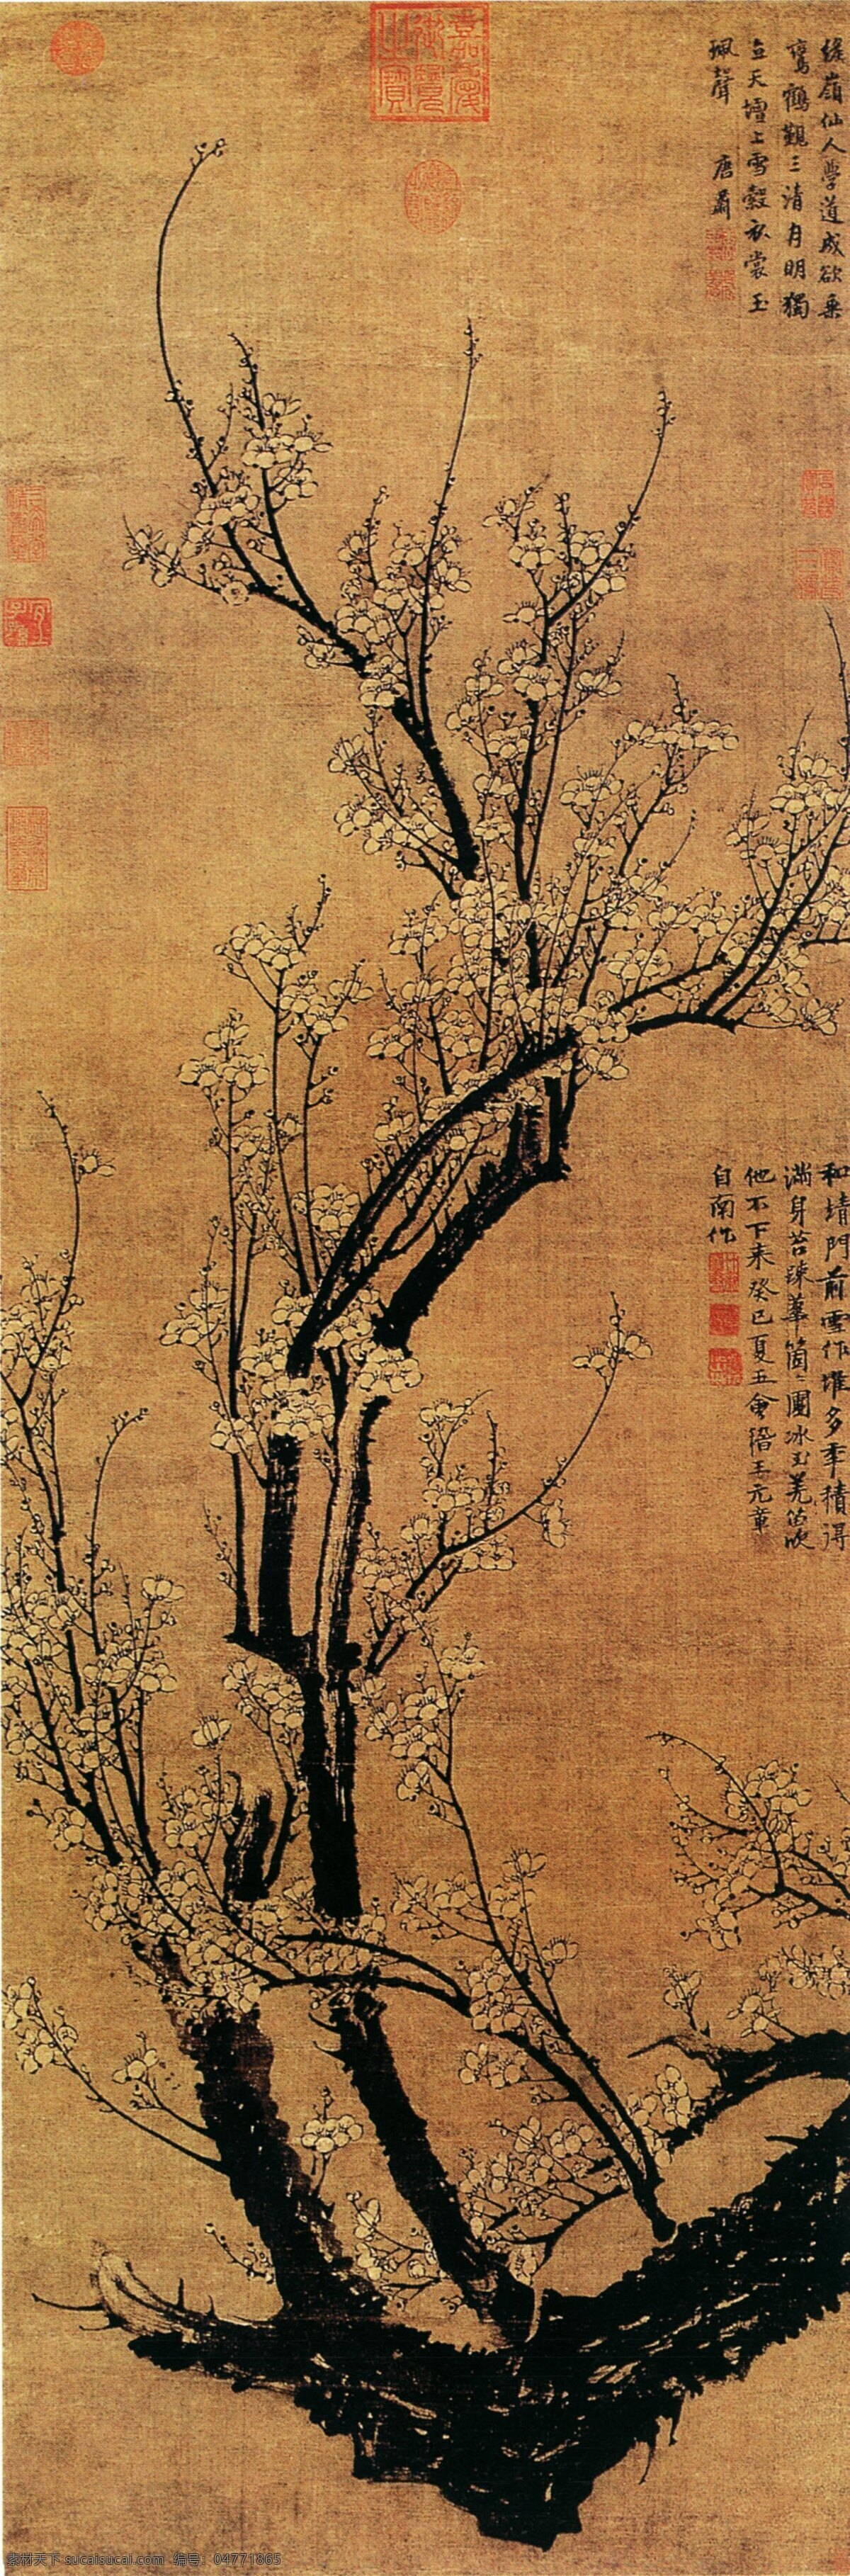 中国 传世 名画 花鸟画 梅花 中国传世名画 古典花鸟画 文化艺术